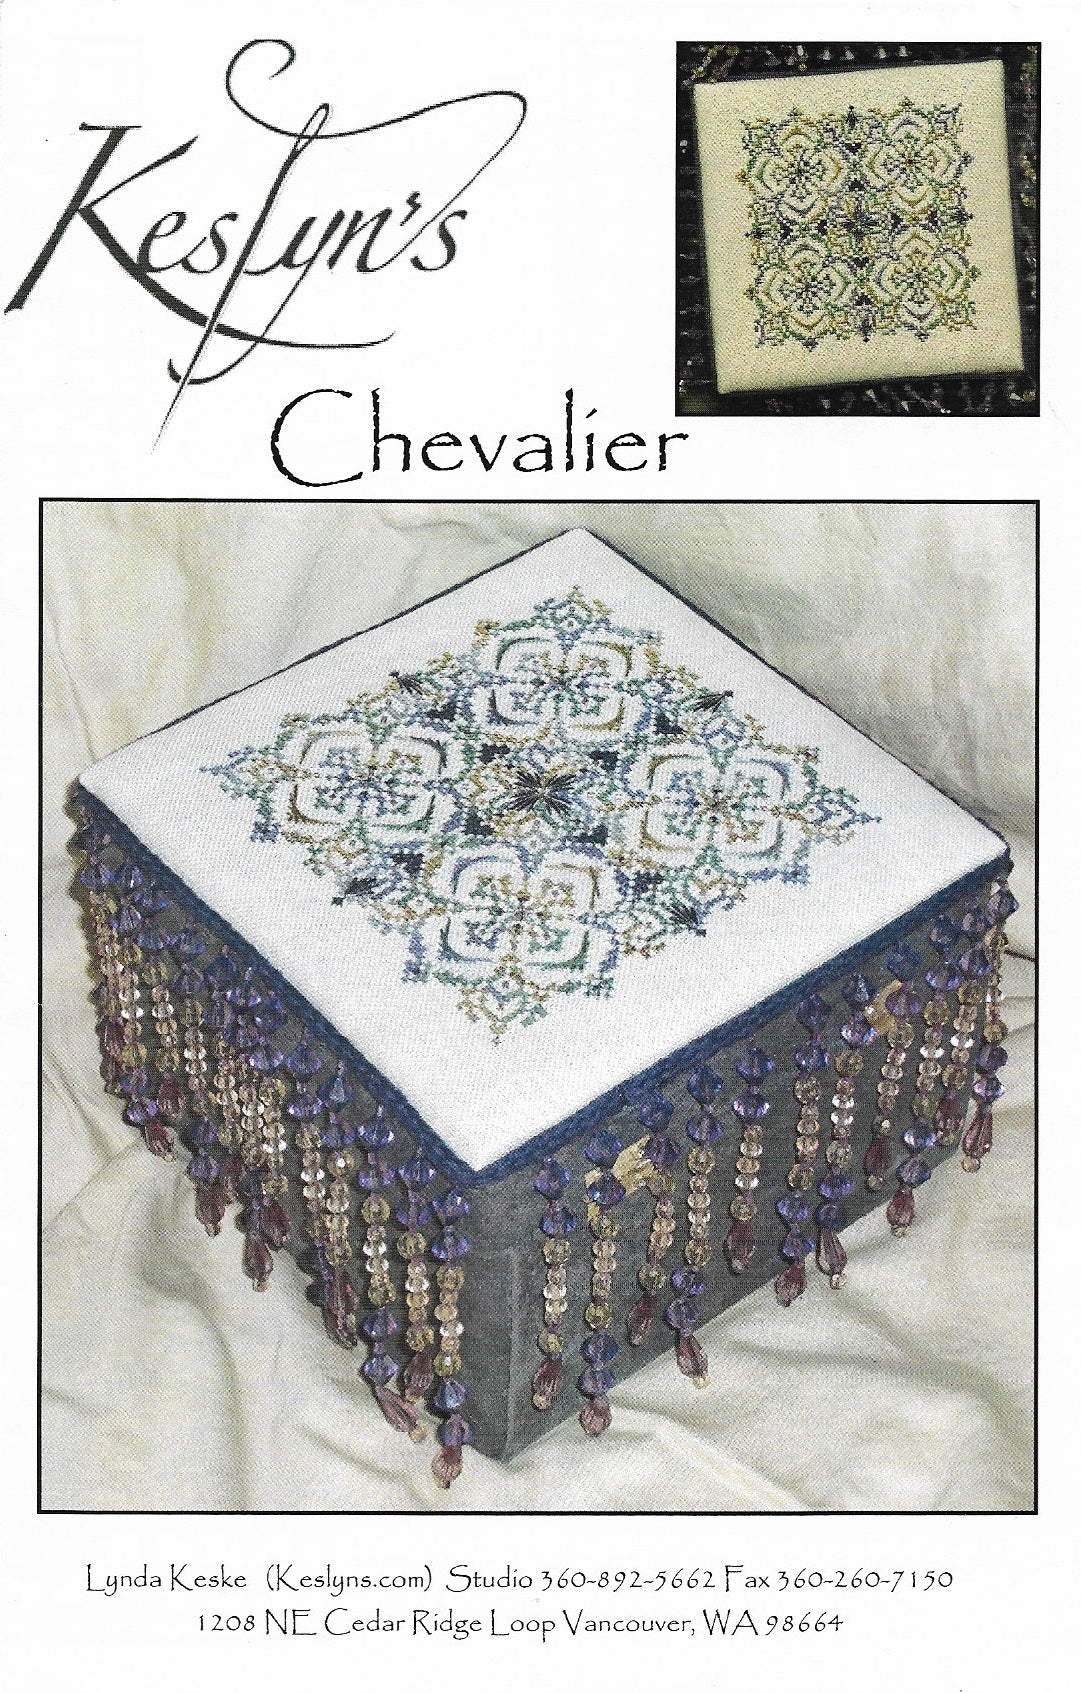 Keslyn's Chevalier cross stitch pattern